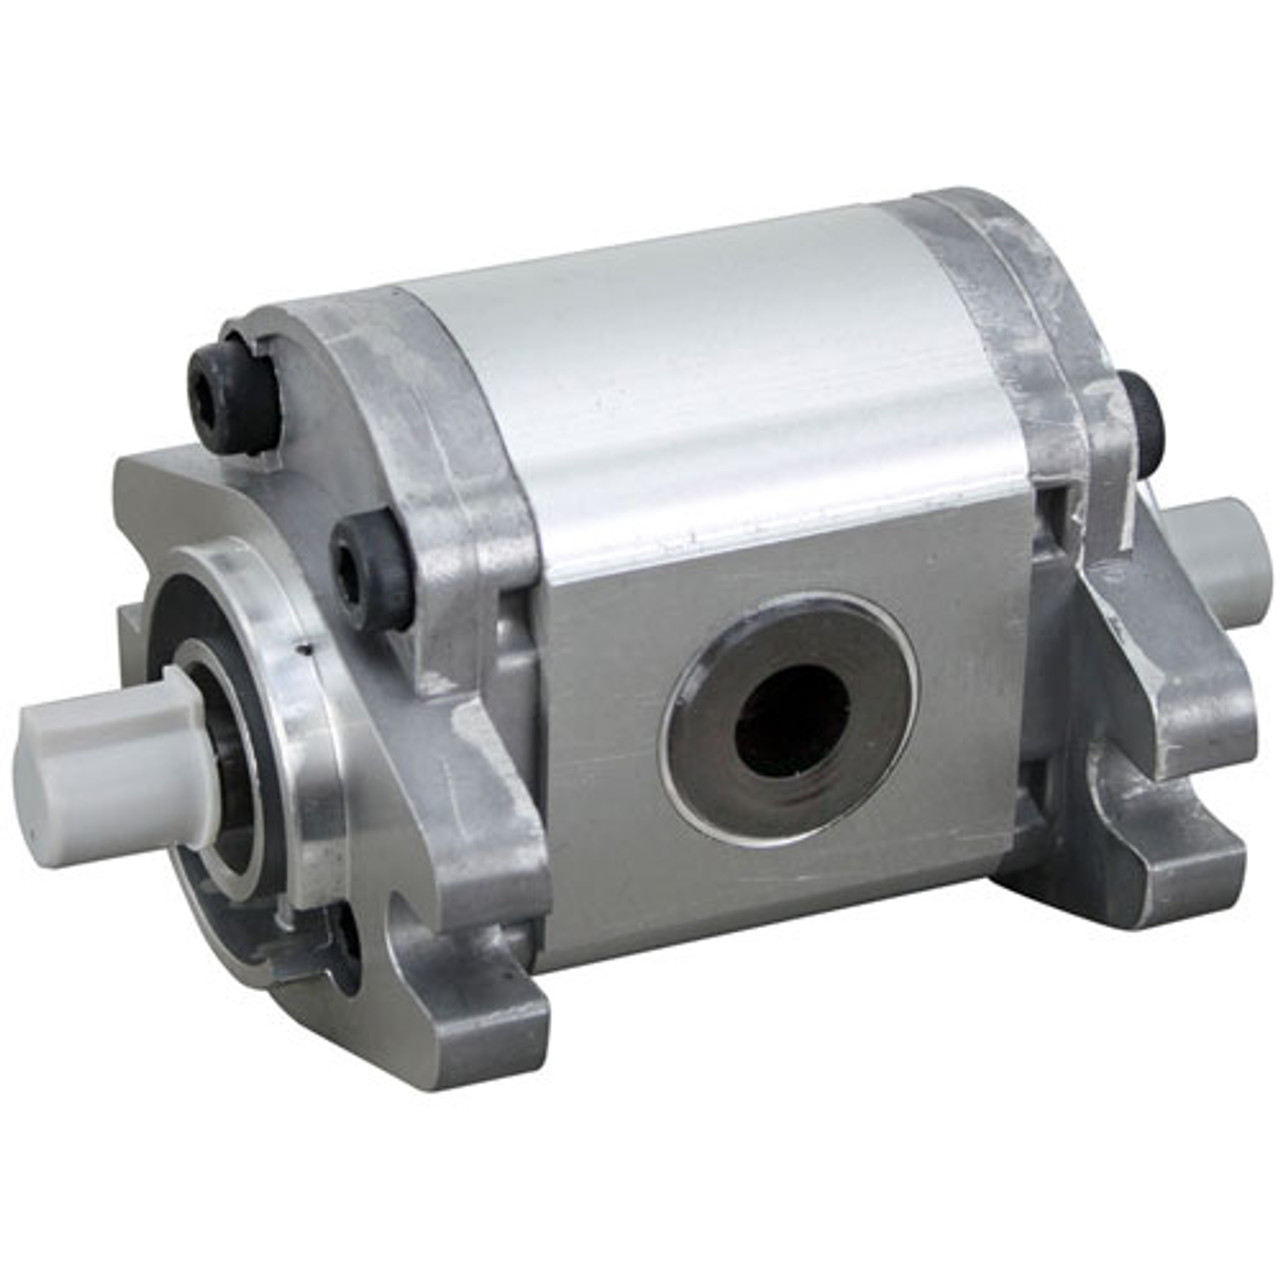 Cleveland SK2378802 - Hydraulic Pump Tr #Gp-F10-6.1-P6-C